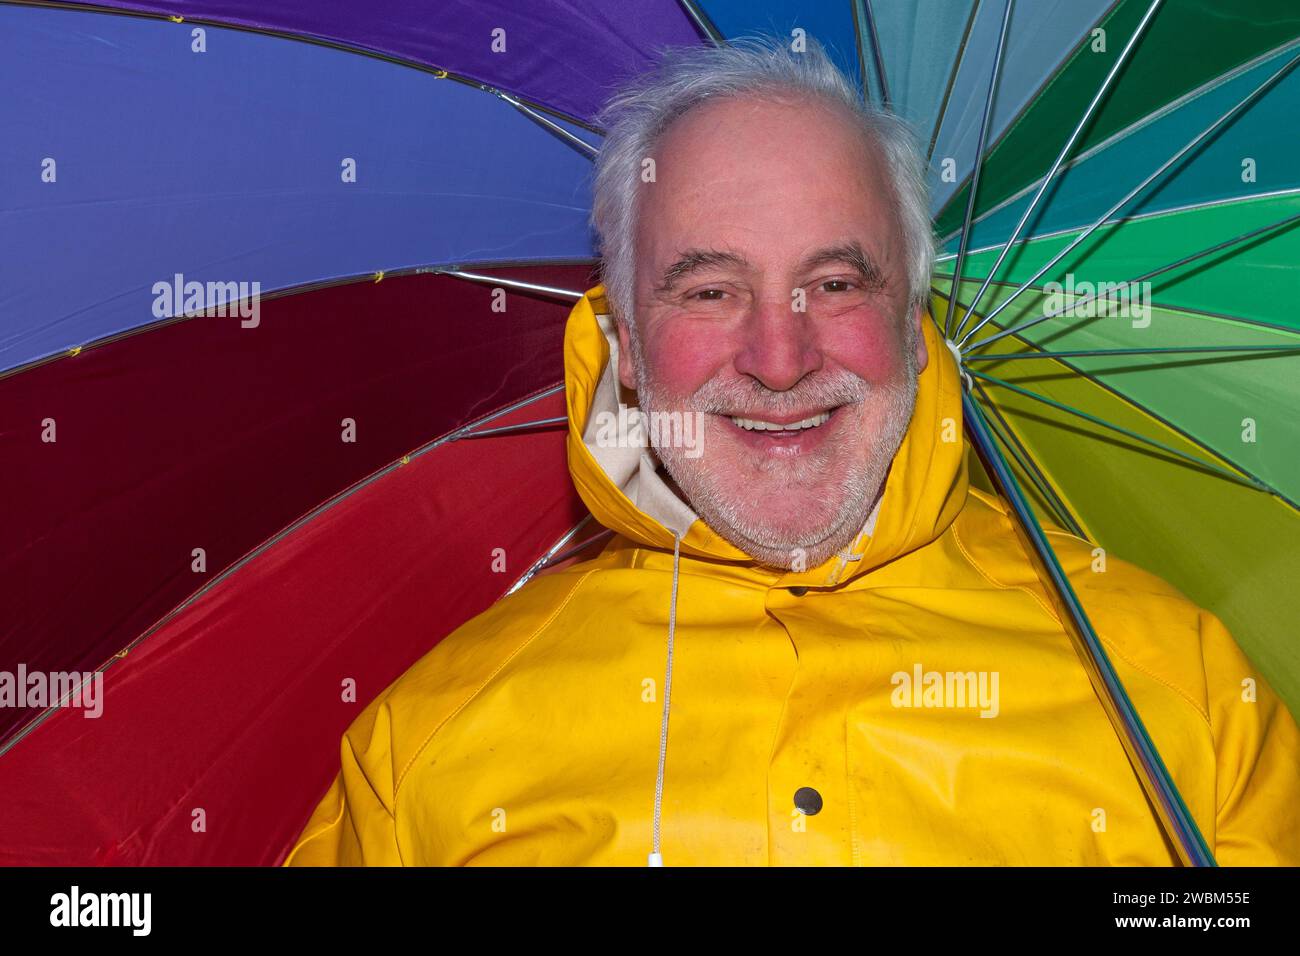 De bonne humeur malgré le mauvais temps, un senior souriant dans une veste de pluie jaune et un parapluie coloré rayonne de joie. Banque D'Images